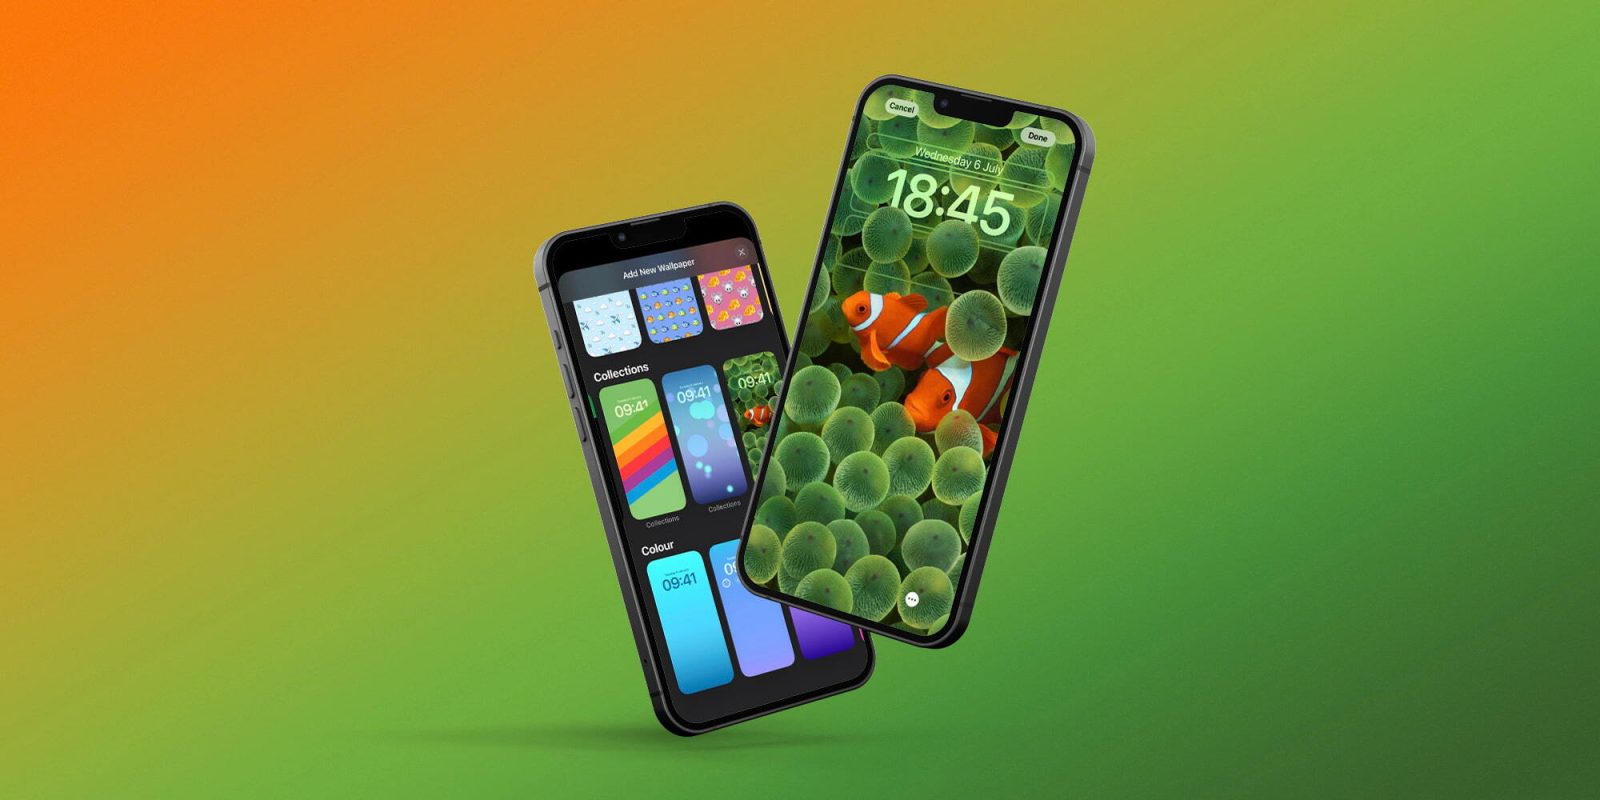 Hãy tải ngay một hình nền Clownfish đầy màu sắc và vui nhộn cho điện thoại của bạn. Hình nền này sẽ khiến cho màn hình điện thoại của bạn trở nên sống động và đáng yêu hơn bao giờ hết.